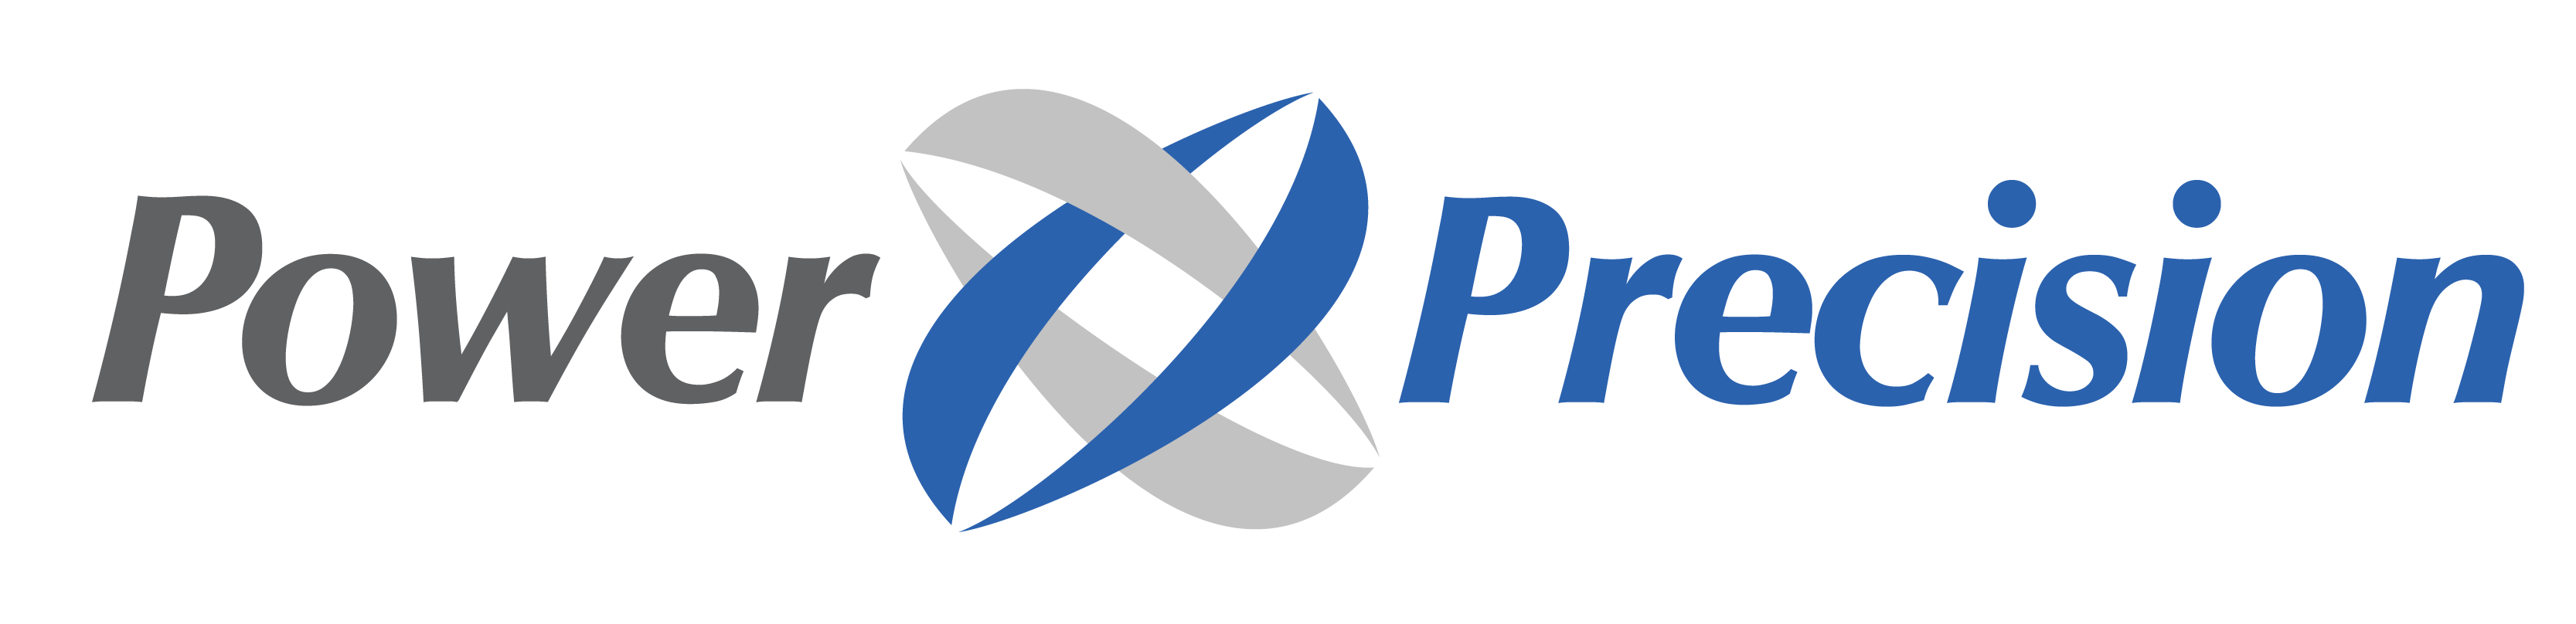 Power Precision Inc. Logo